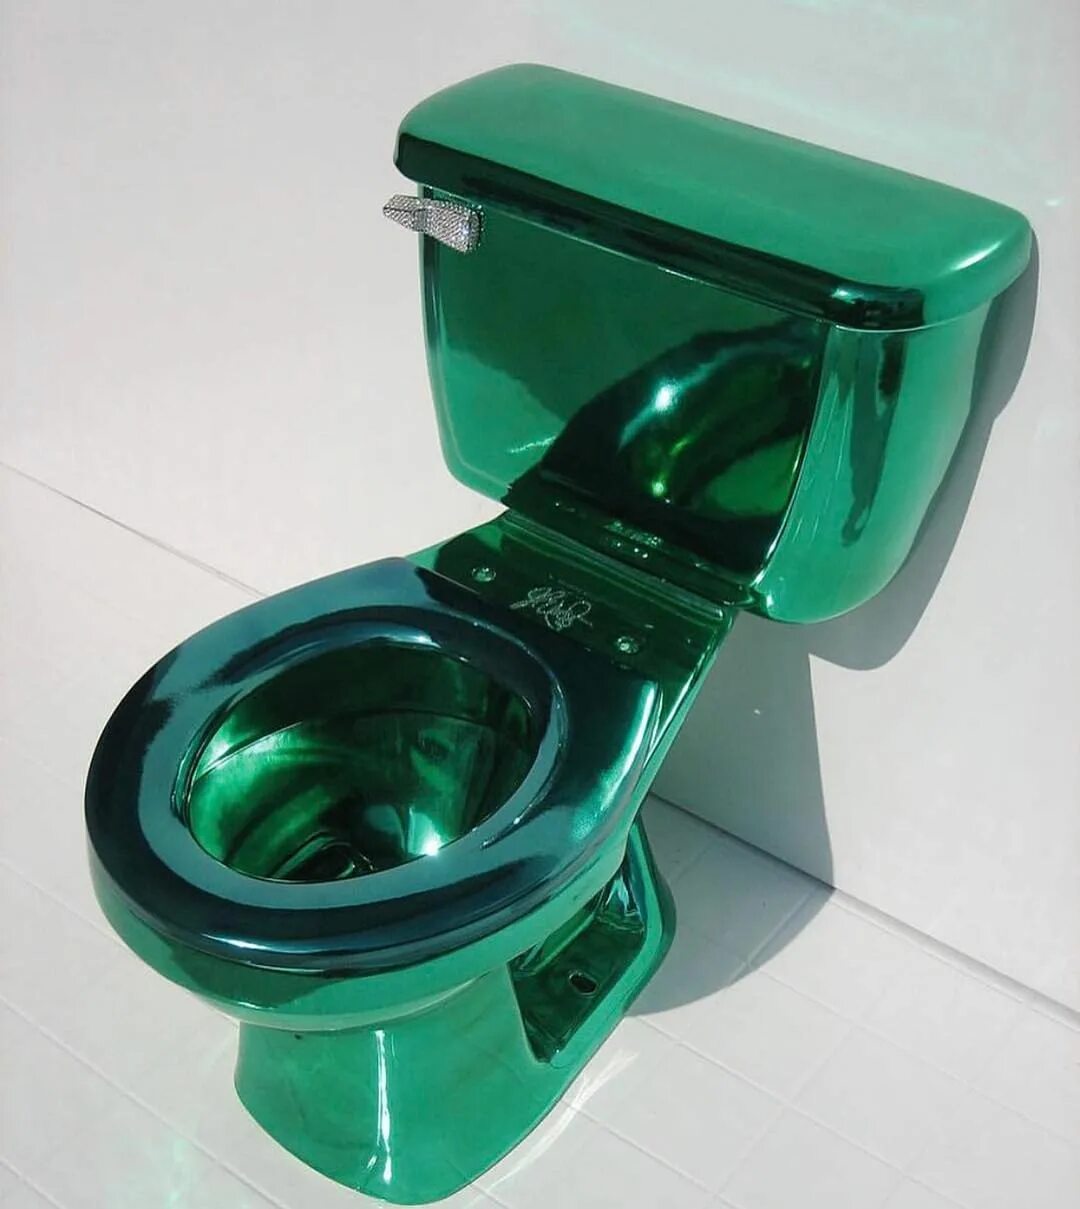 Унитаз Коломбо зеленый малахит. Унитаз унитаз салатовый Орион. Унитаз Ирида зеленый. Унитаз Ирида с бачком зеленый. Купить новый туалет